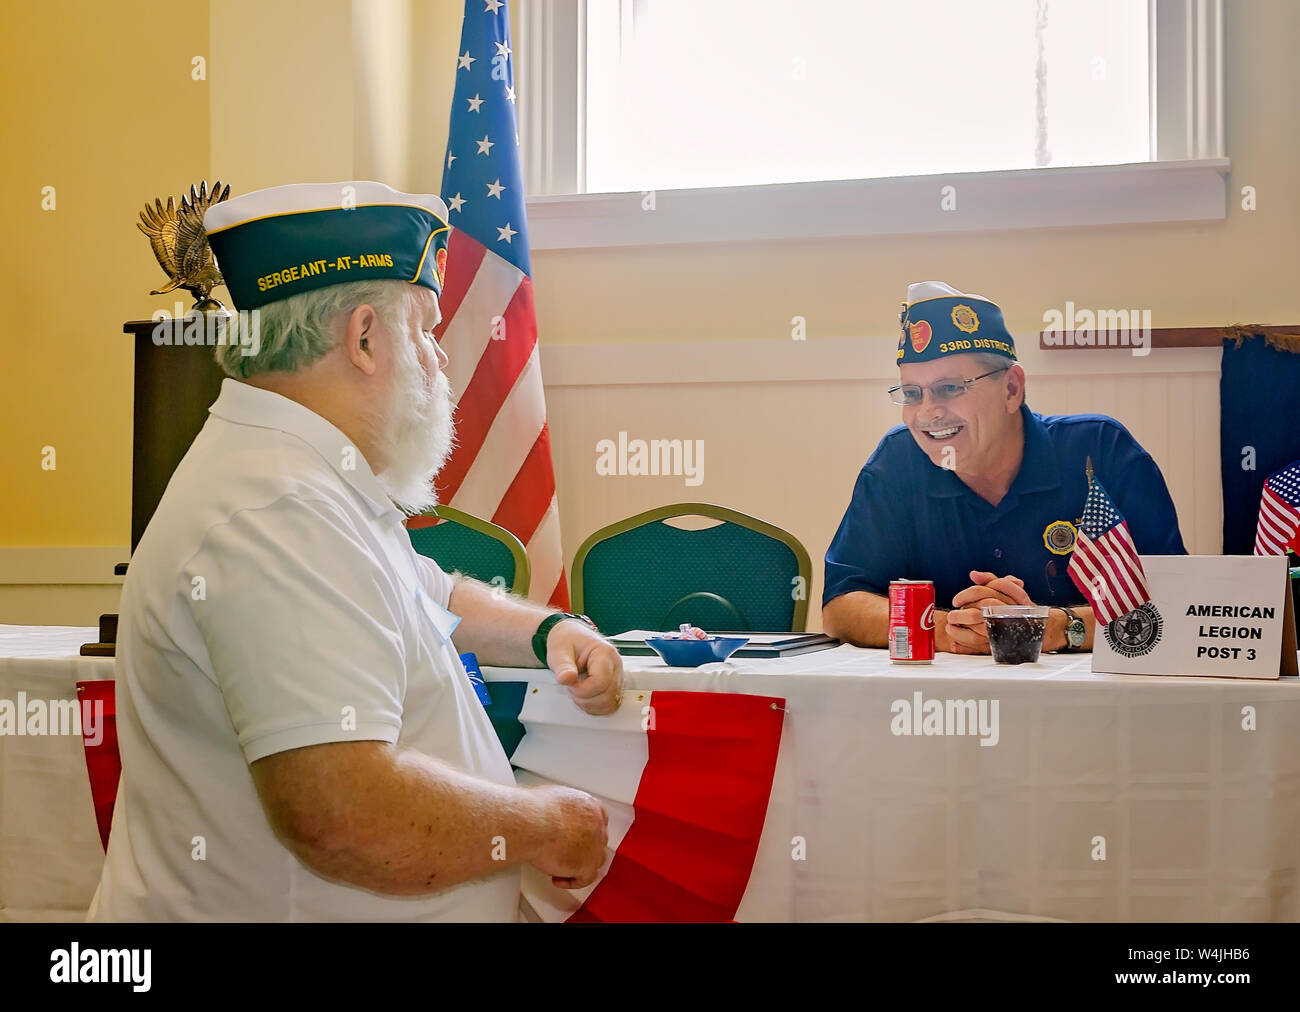 Mitglieder der amerikanischen Legion Sprechen während der Post 3 open house, Juli 21, 2019 in Mobile, Alabama. Stockfoto